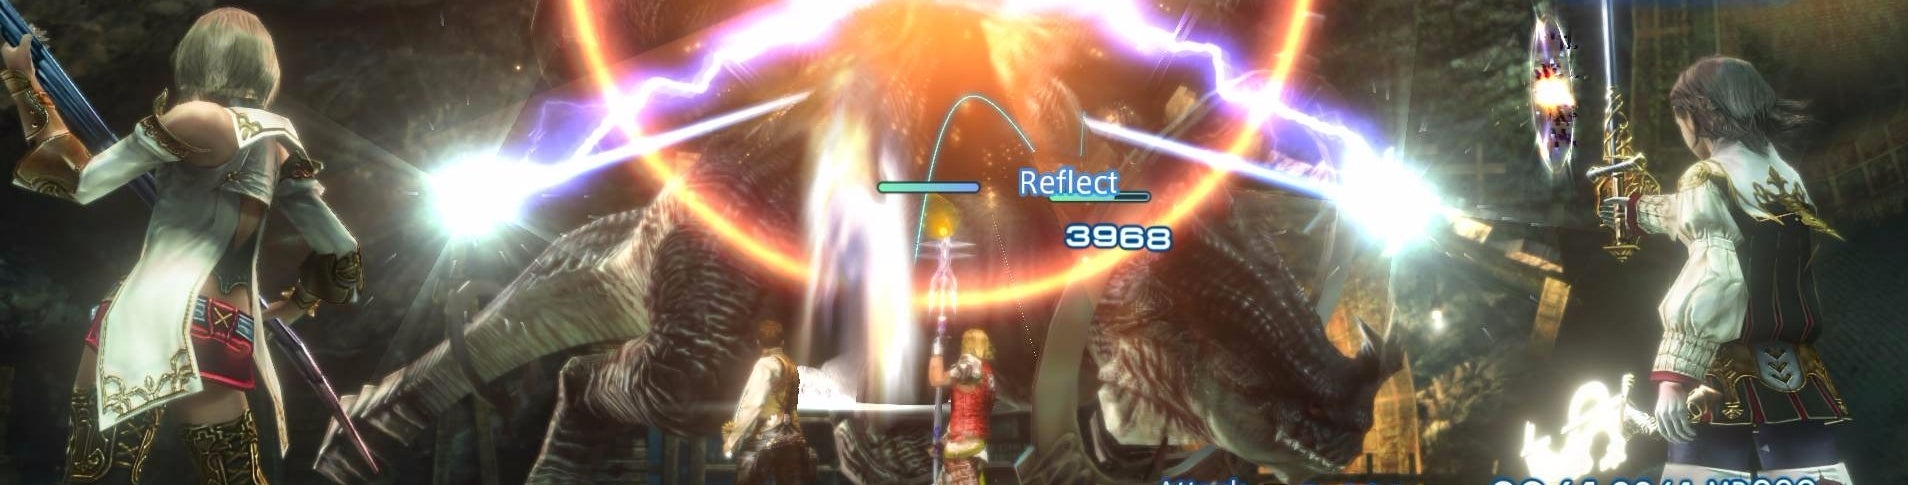 Imagem para Digital Foundry: Final Fantasy 12 no PC consegue 60fps - mas os requisitos são elevados